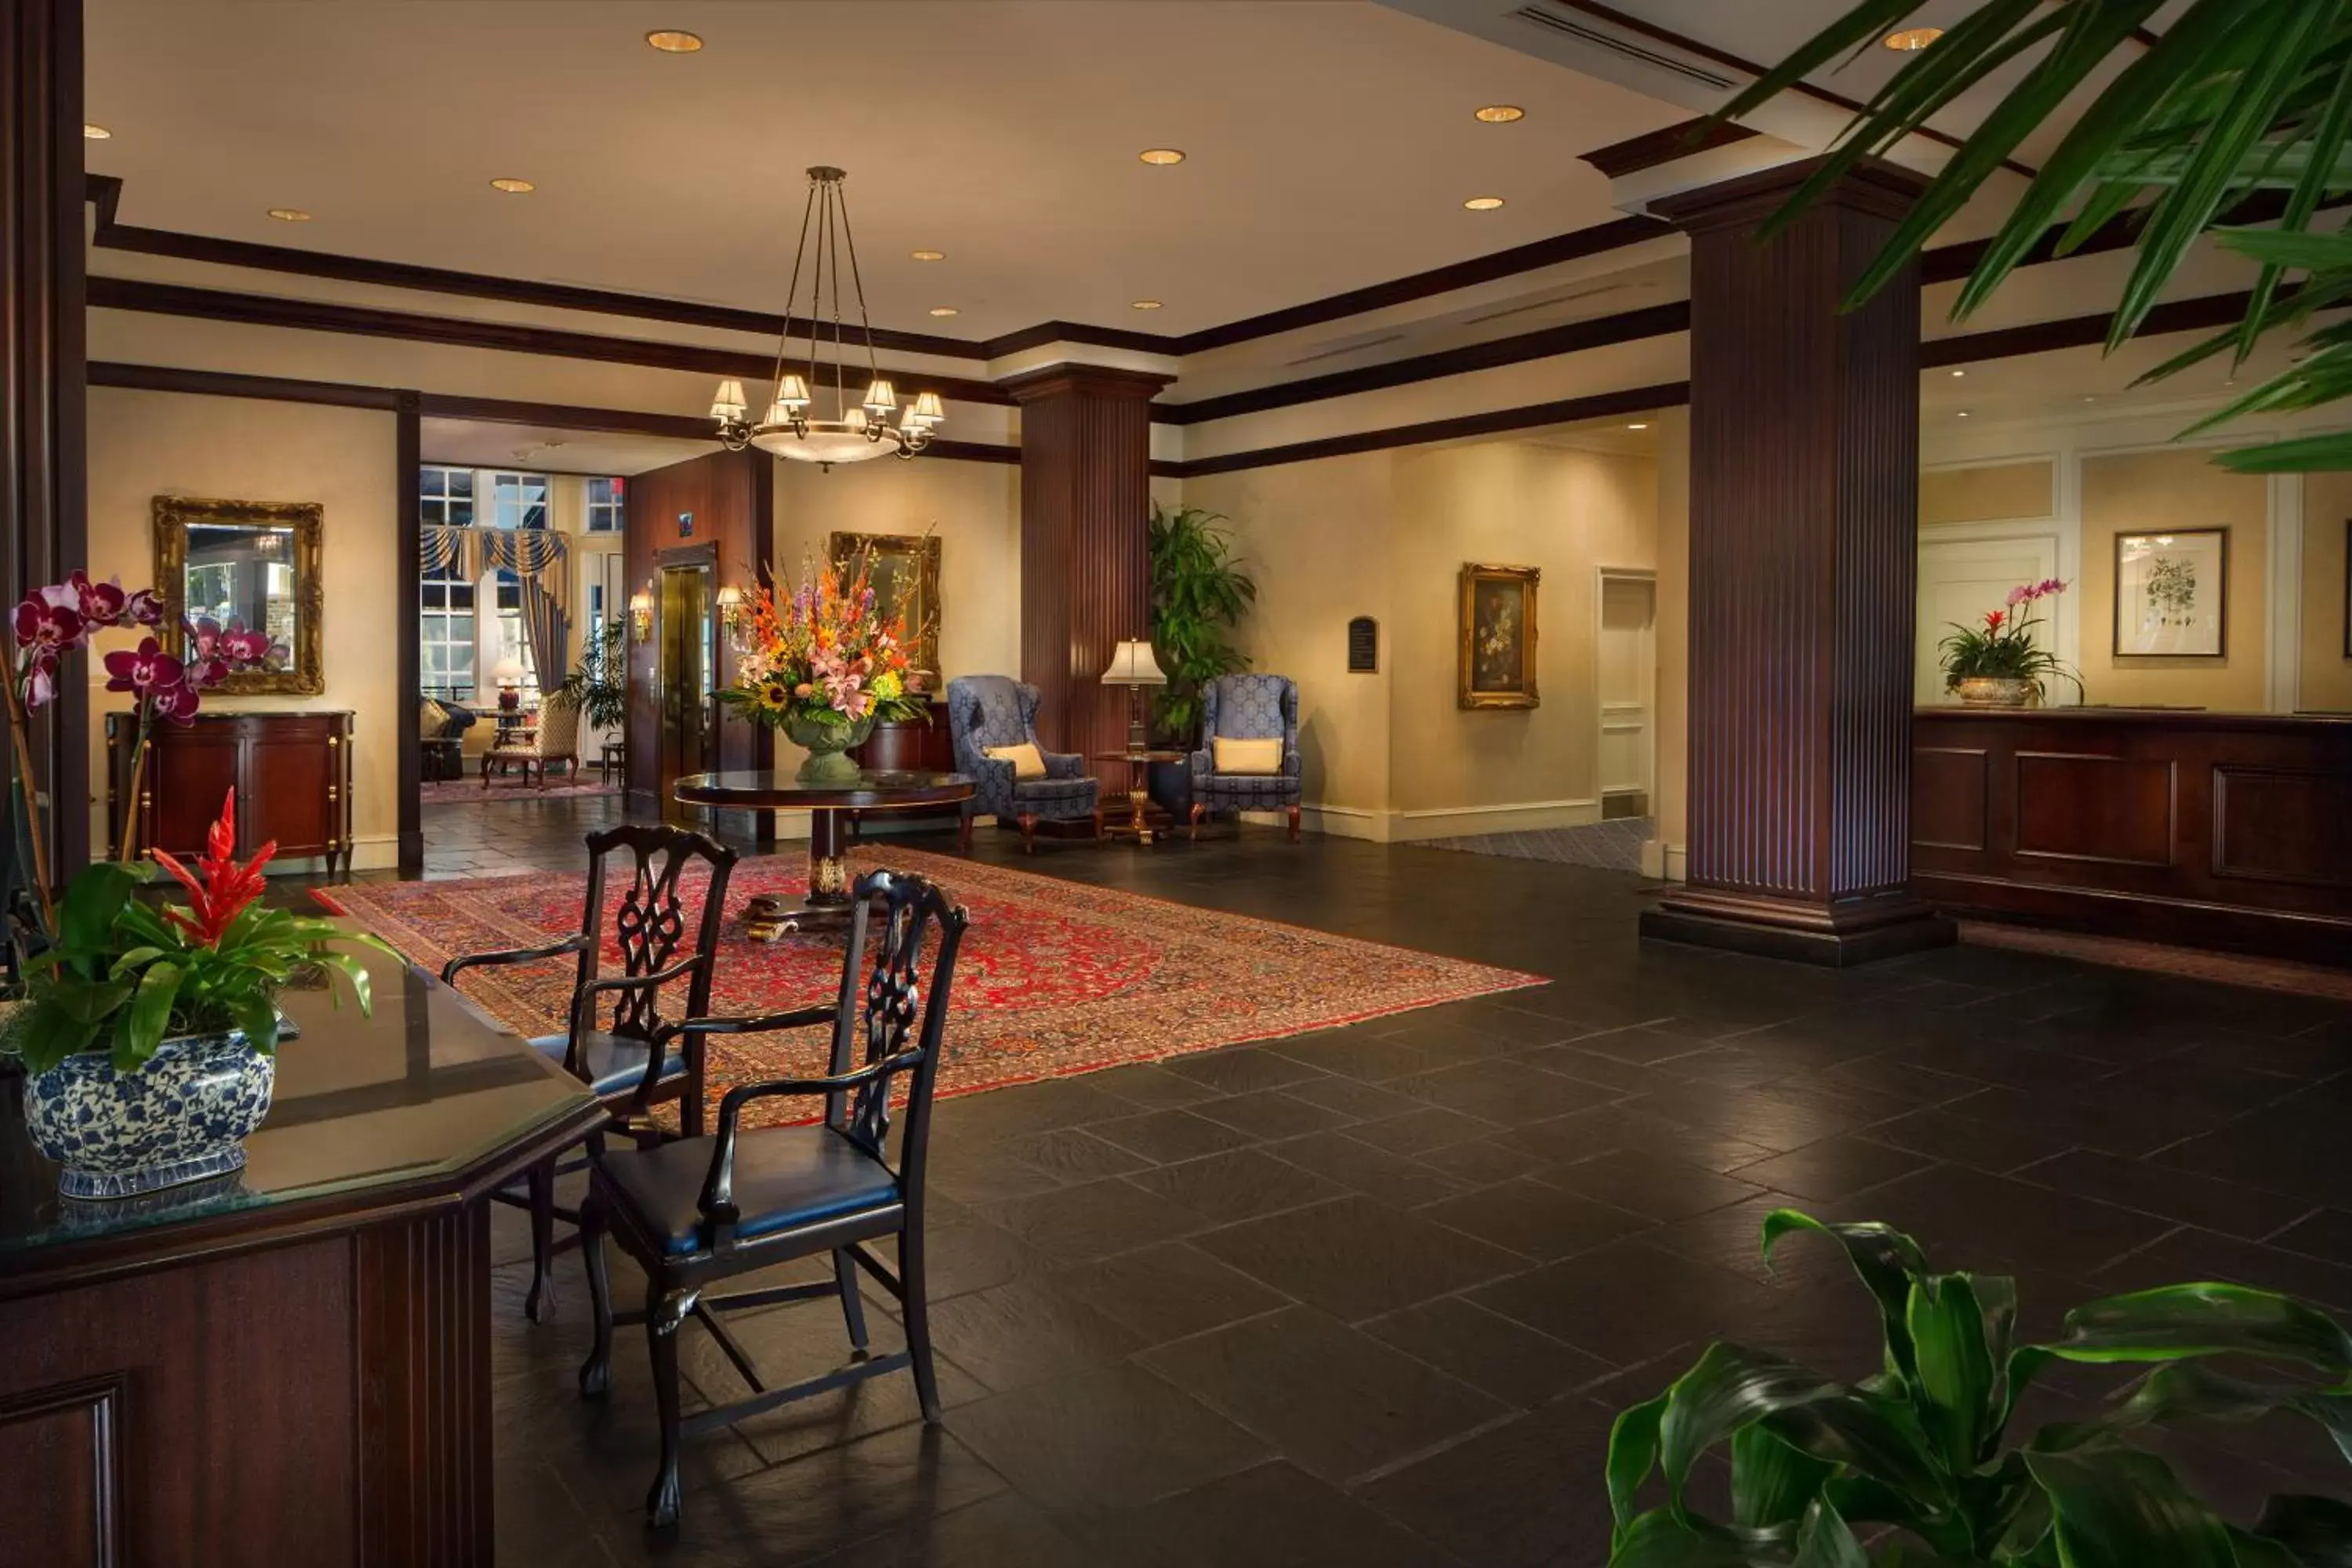 Lobby or reception in Washington Duke Inn & Golf Club